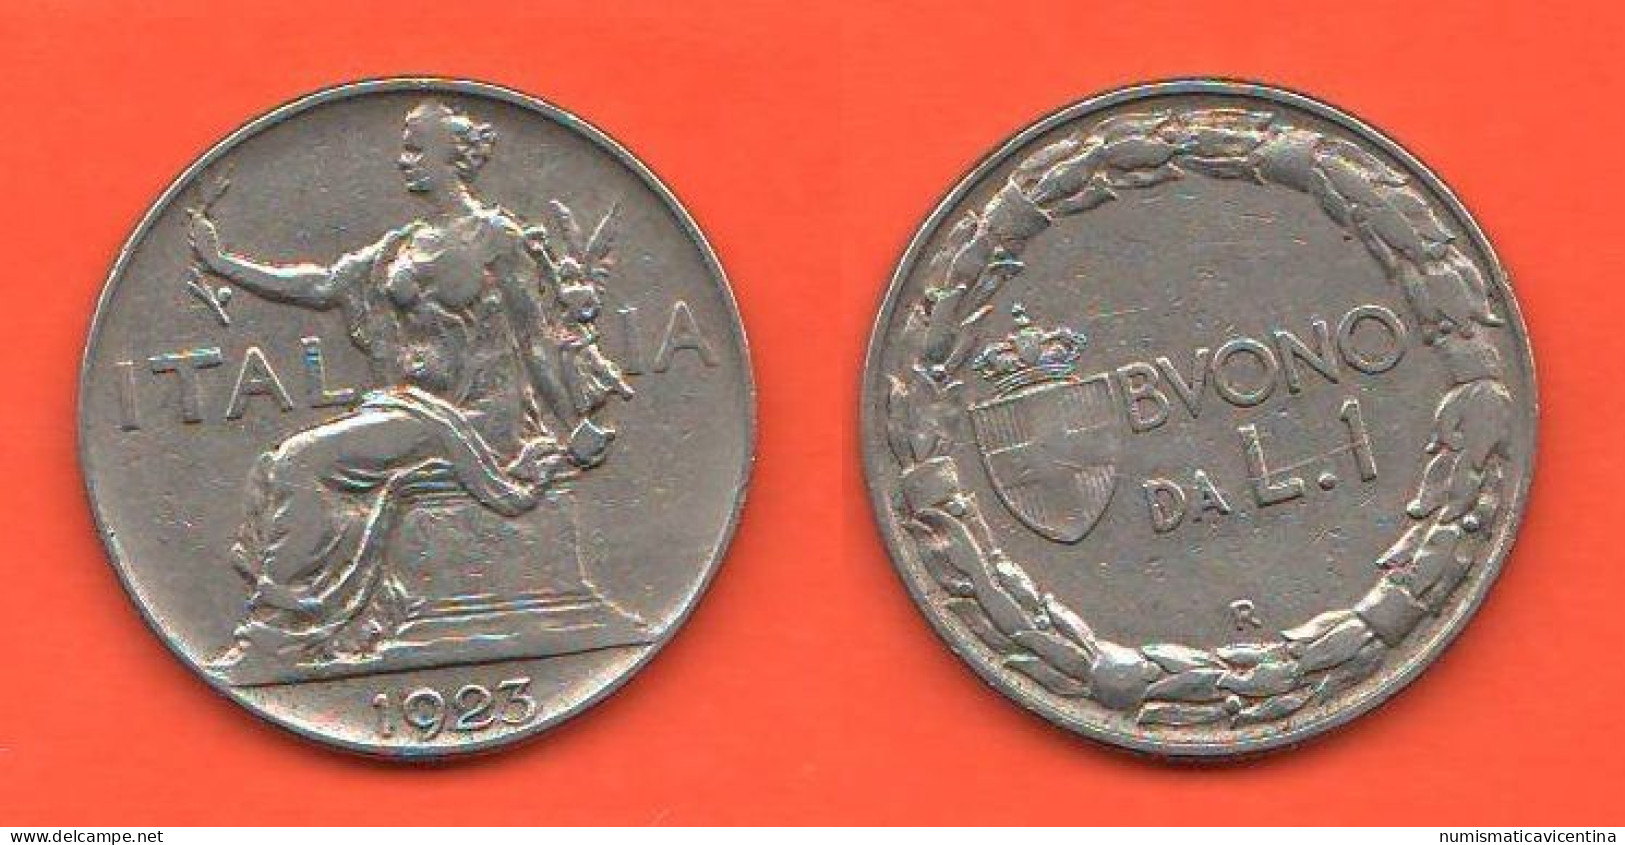 Italia Buono Da 1 Lira 1923 Nickel Coin  C 8 - 1900-1946 : Víctor Emmanuel III & Umberto II